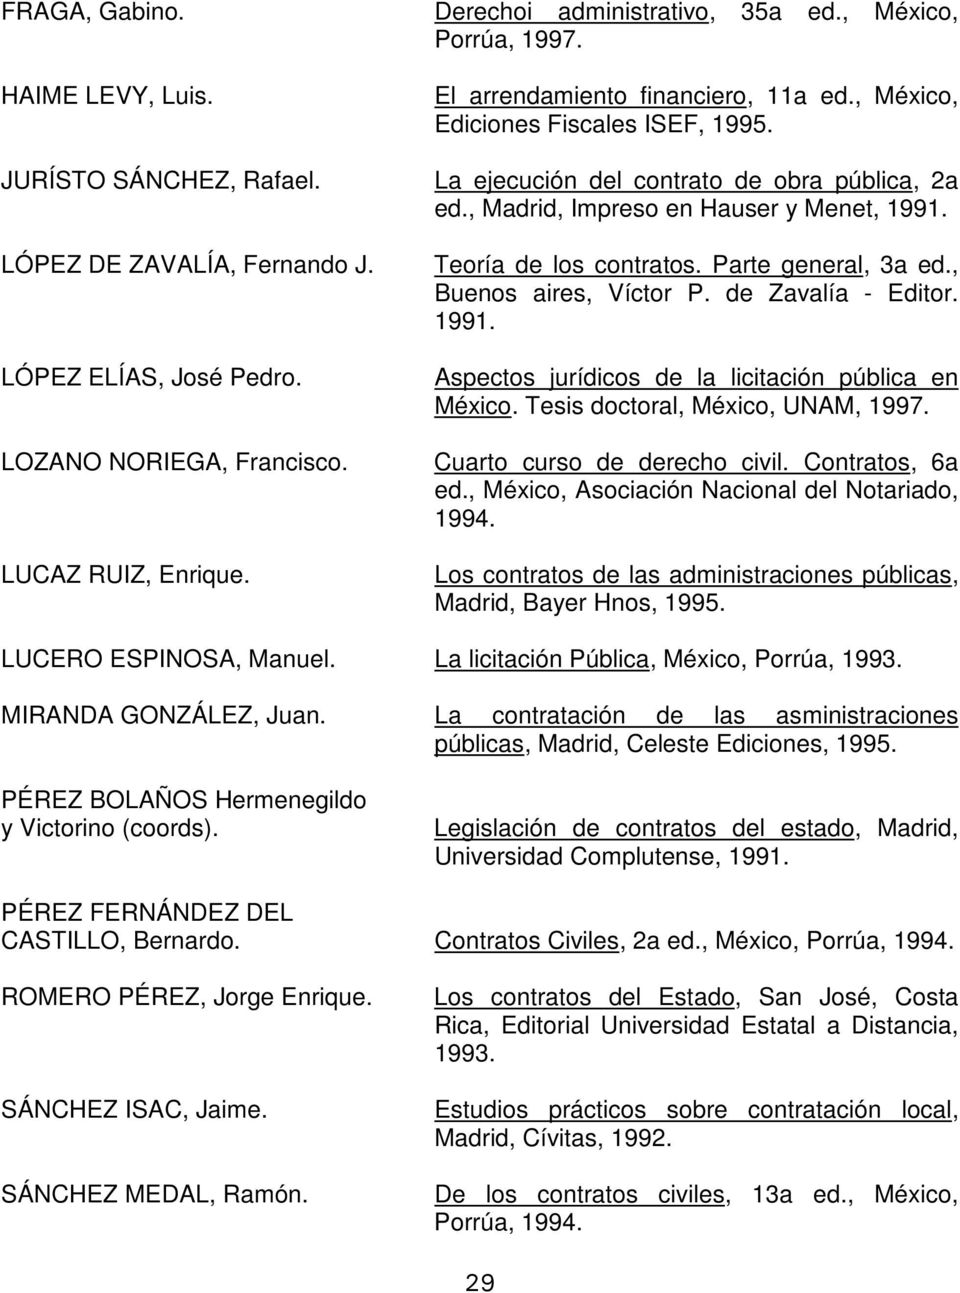 Teoría de los contratos. Parte general, 3a ed., Buenos aires, Víctor P. de Zavalía - Editor. 1991. Aspectos jurídicos de la licitación pública en México. Tesis doctoral, México, UNAM, 1997.